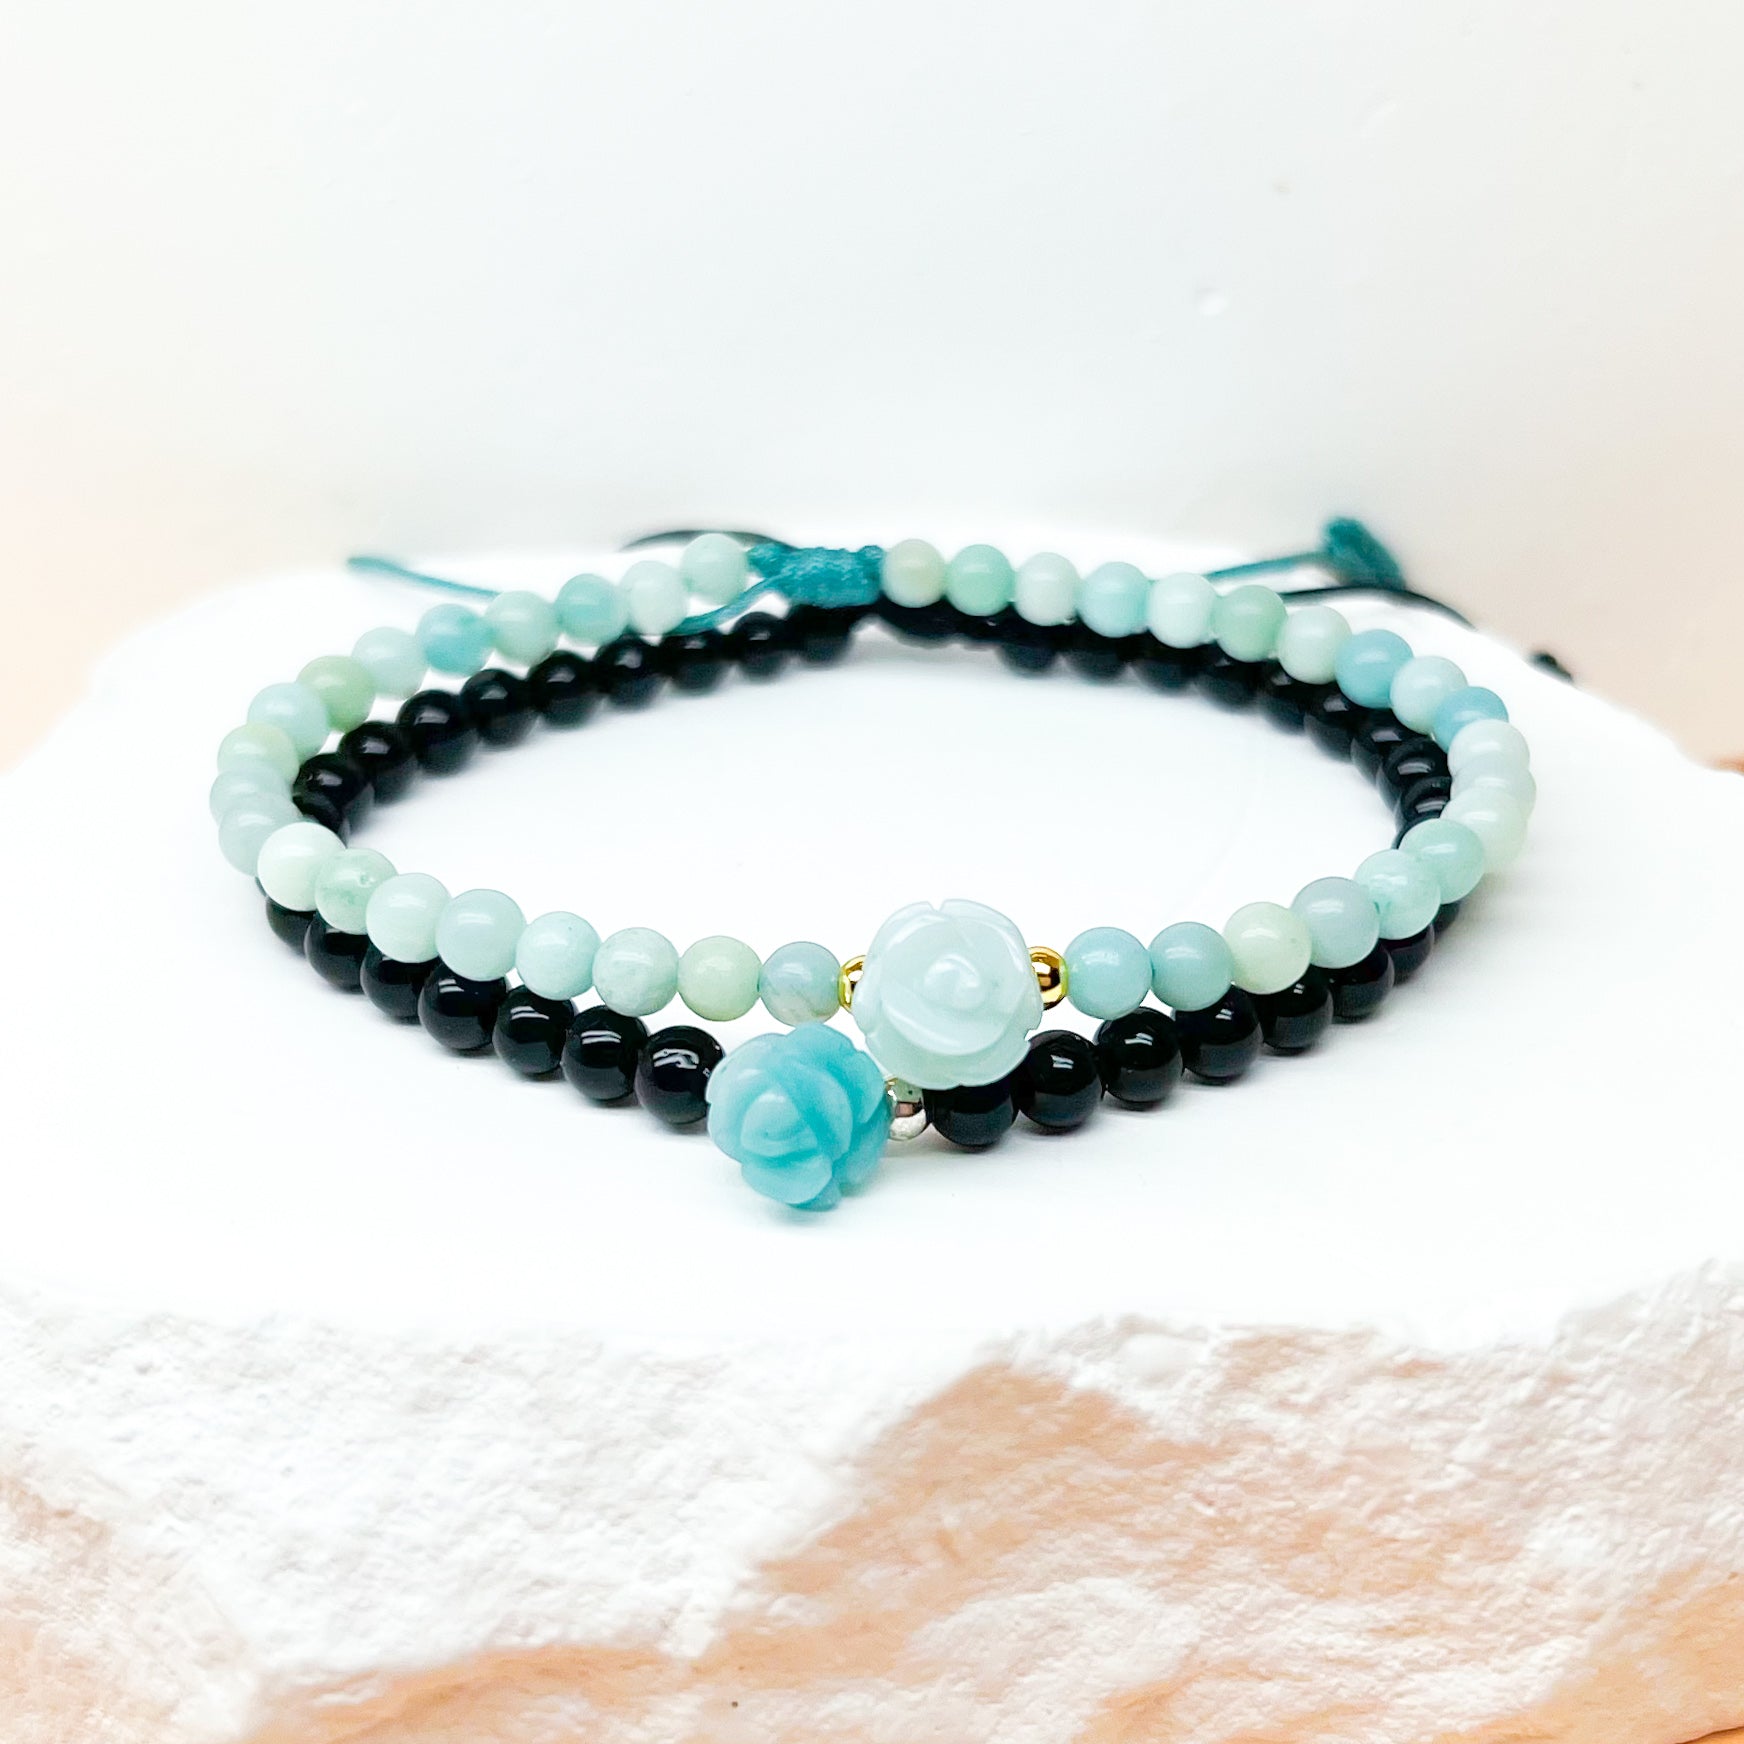 Blue rose amazonite and onyx bracelet